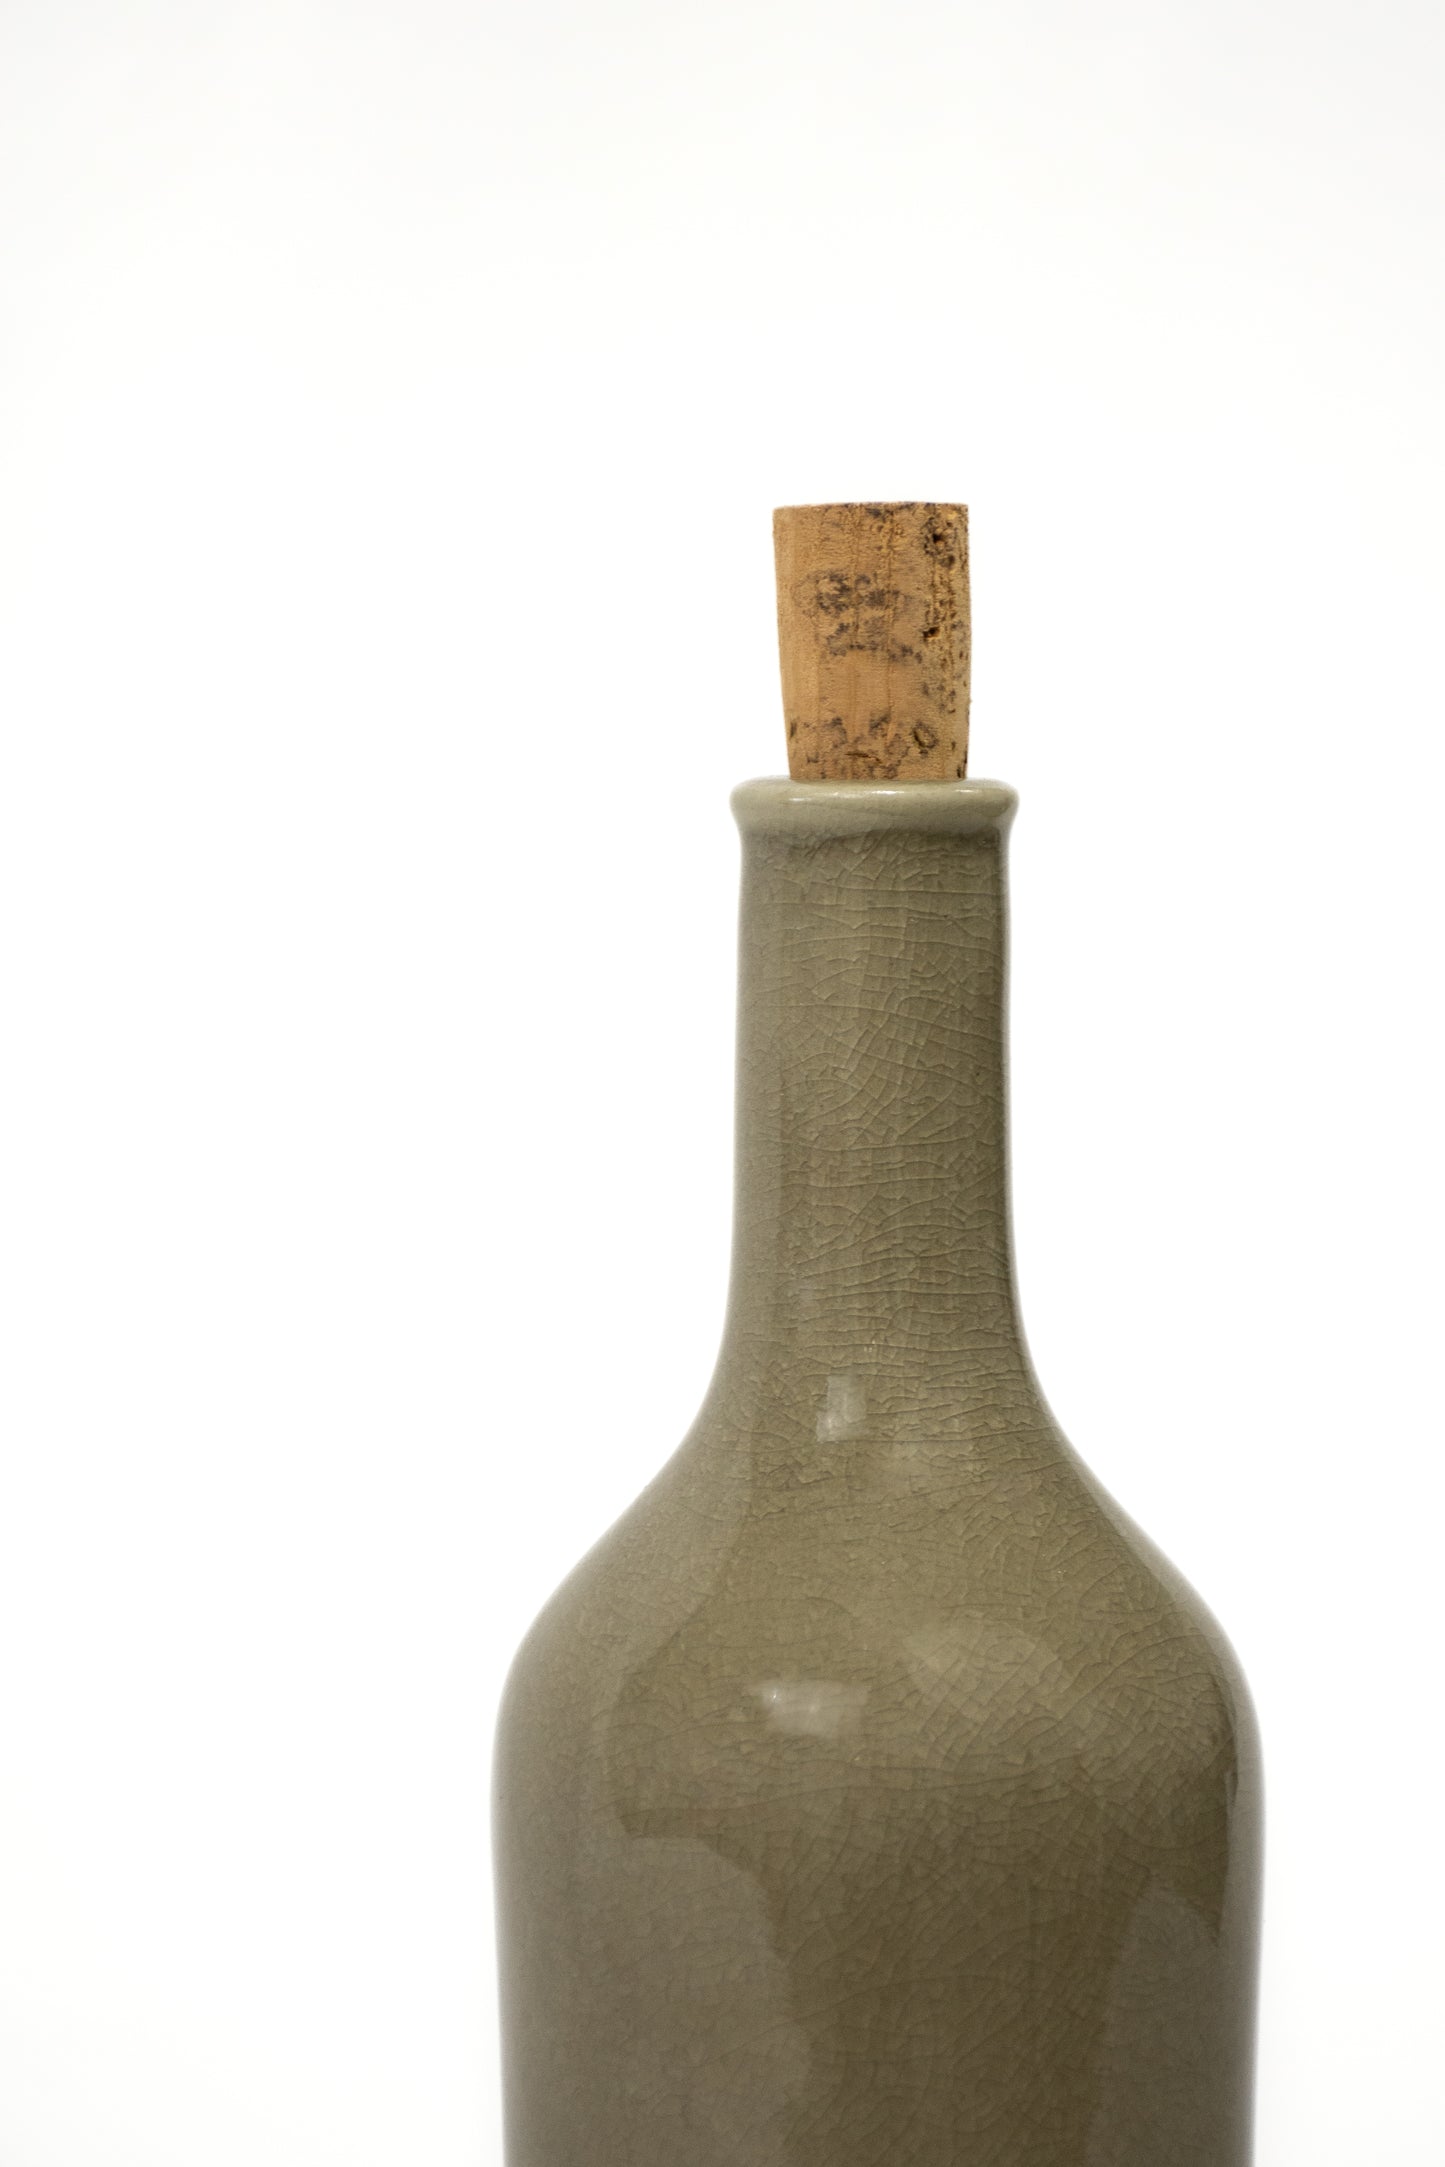 stoneware olive oil bottle - linen